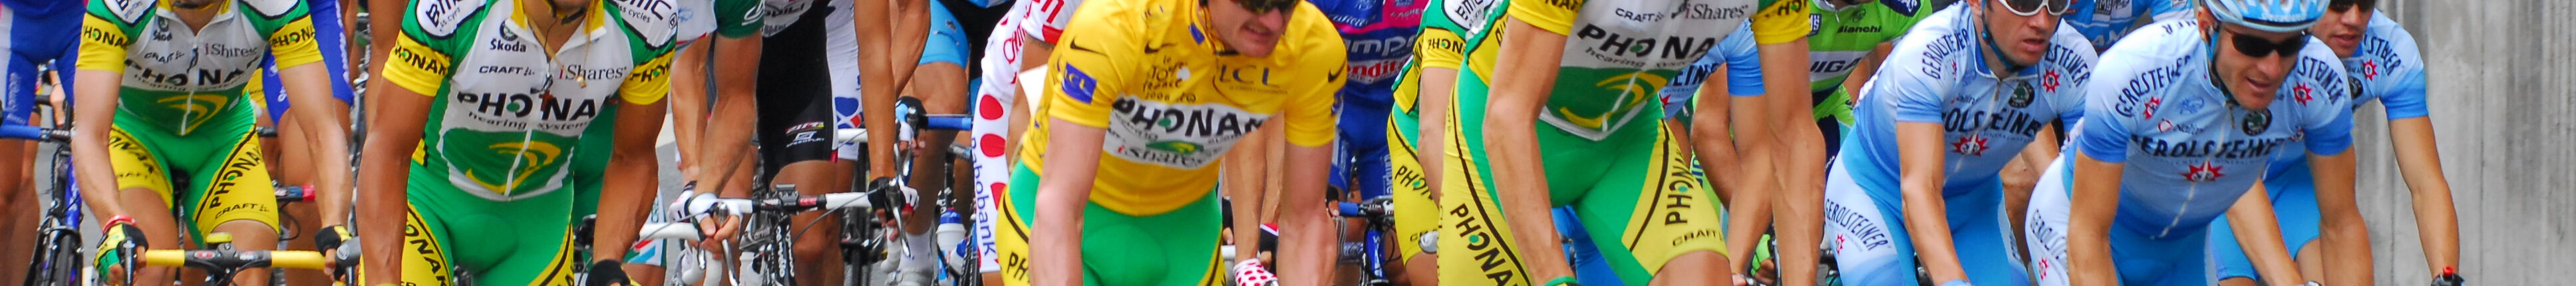 Le Tour de France à Sèvres le 24 juillet